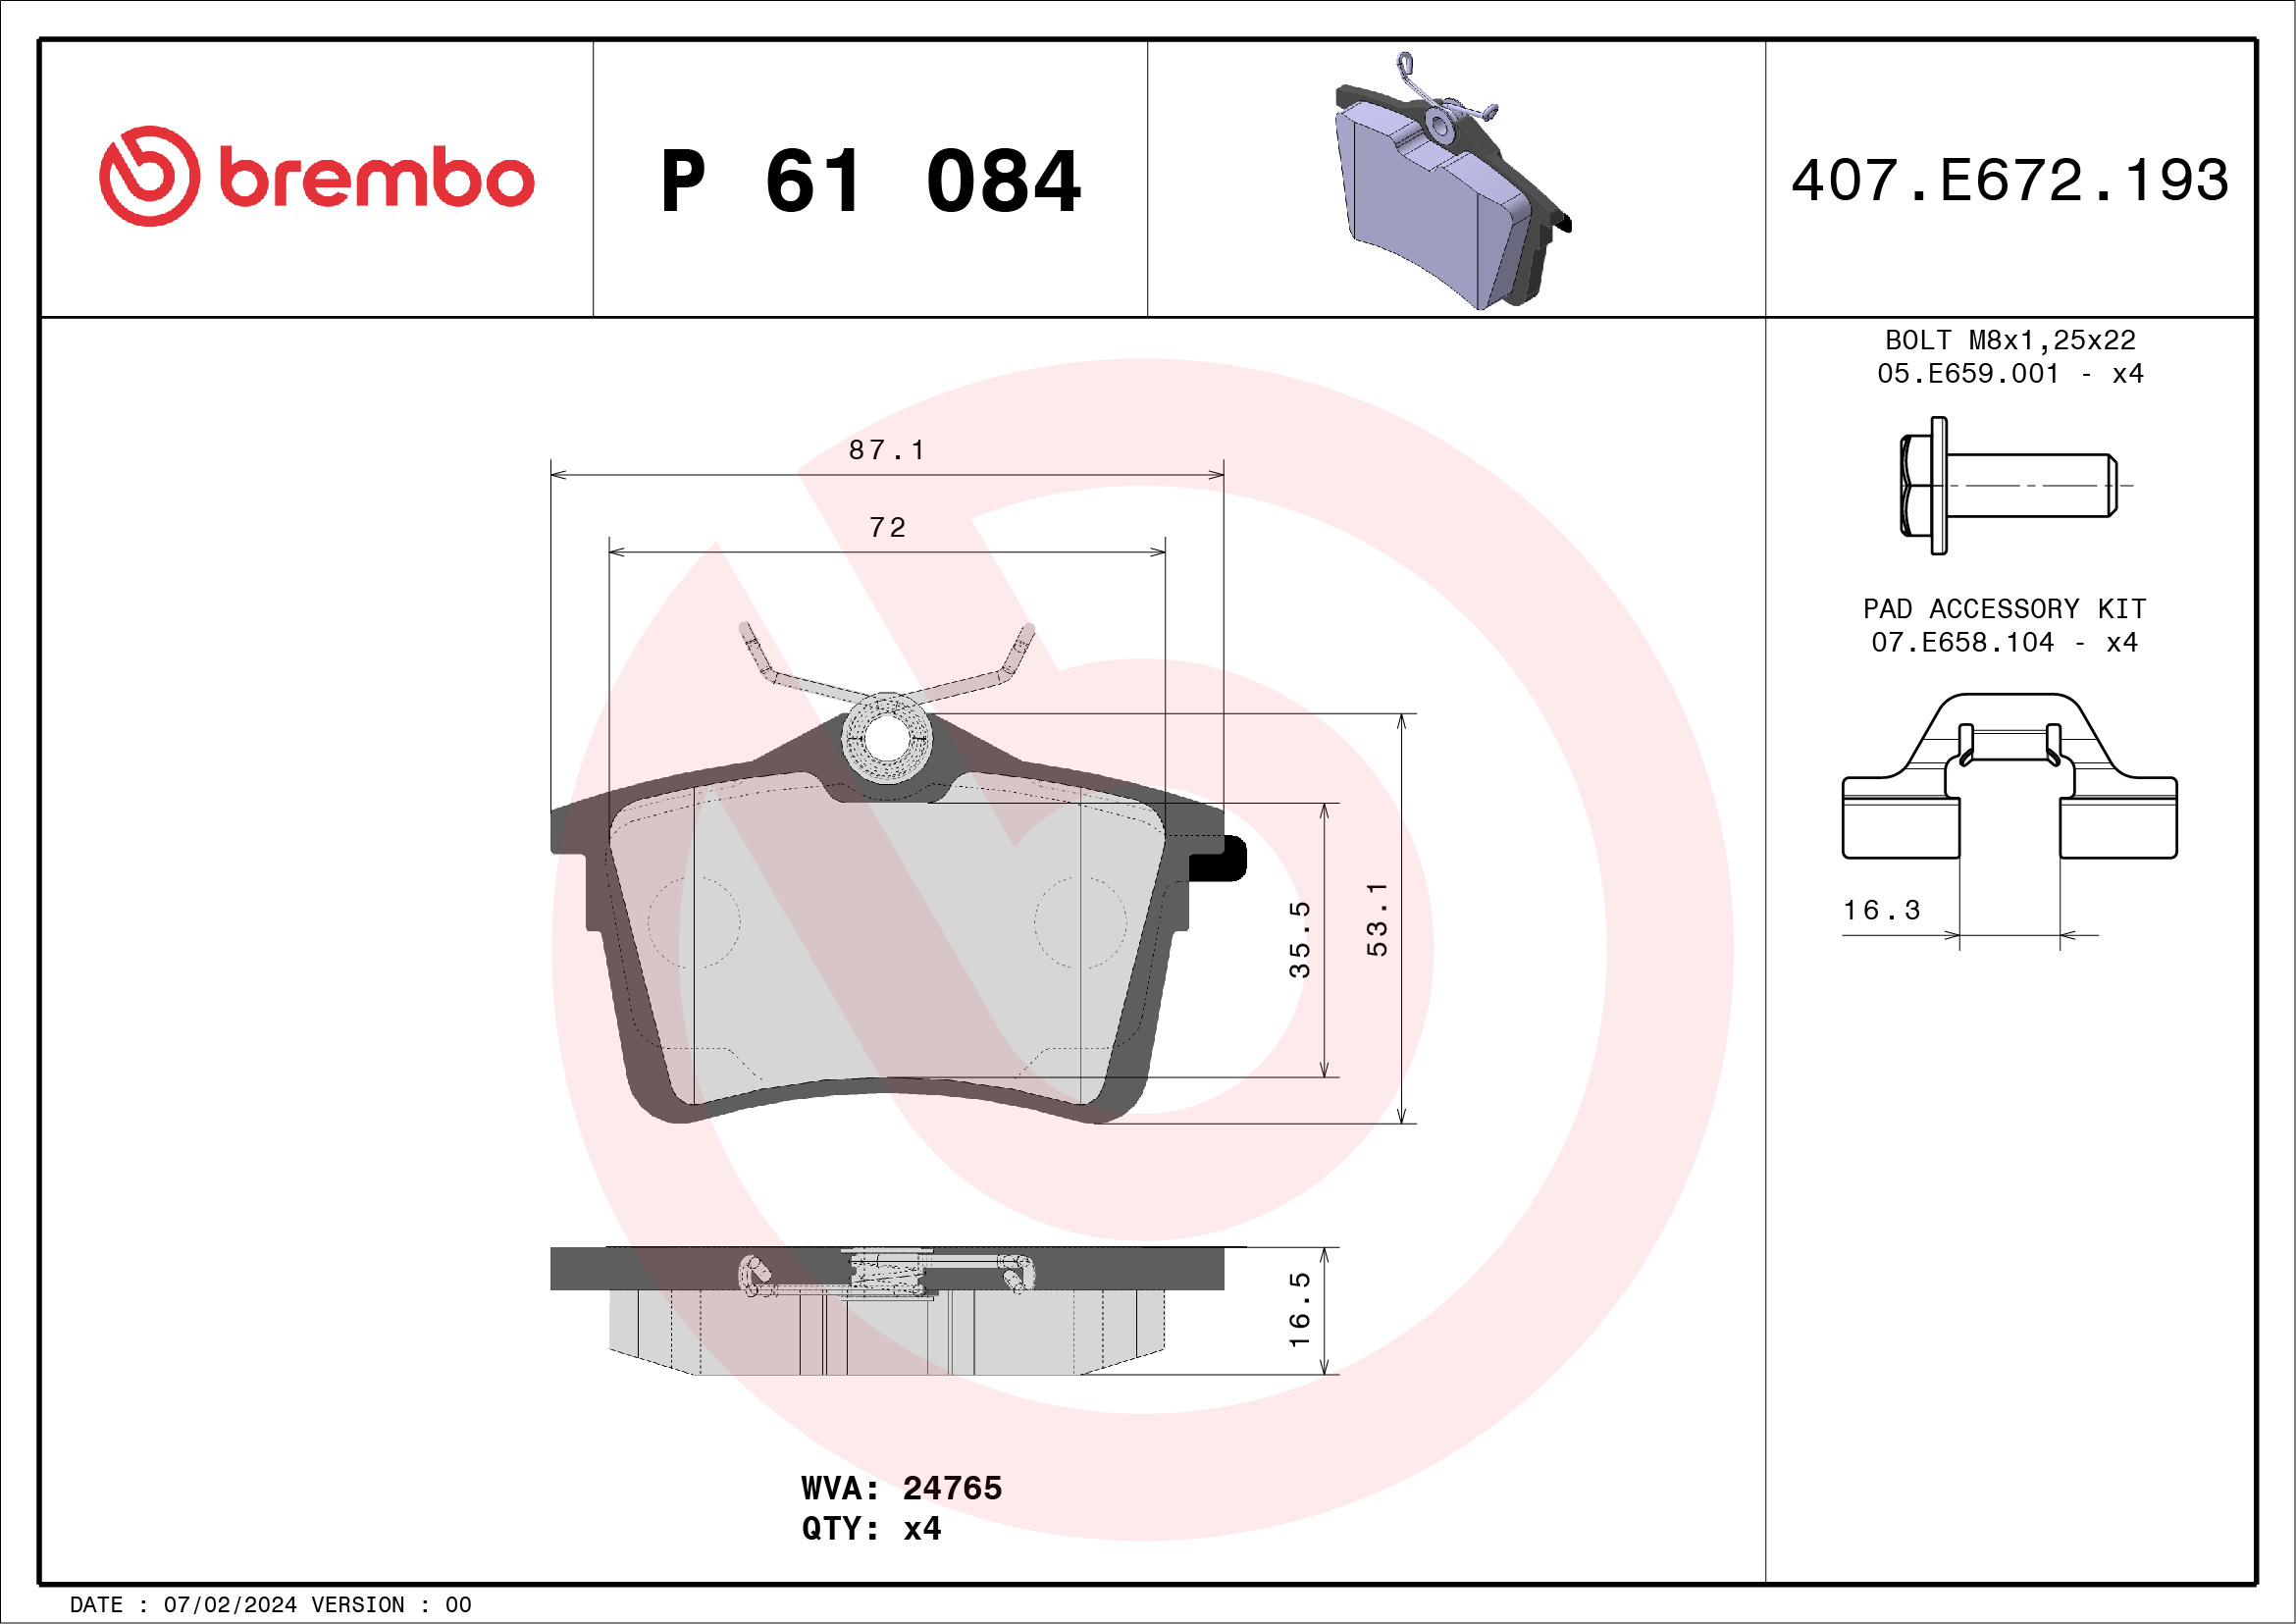 BREMBO P 61 084 Kit...